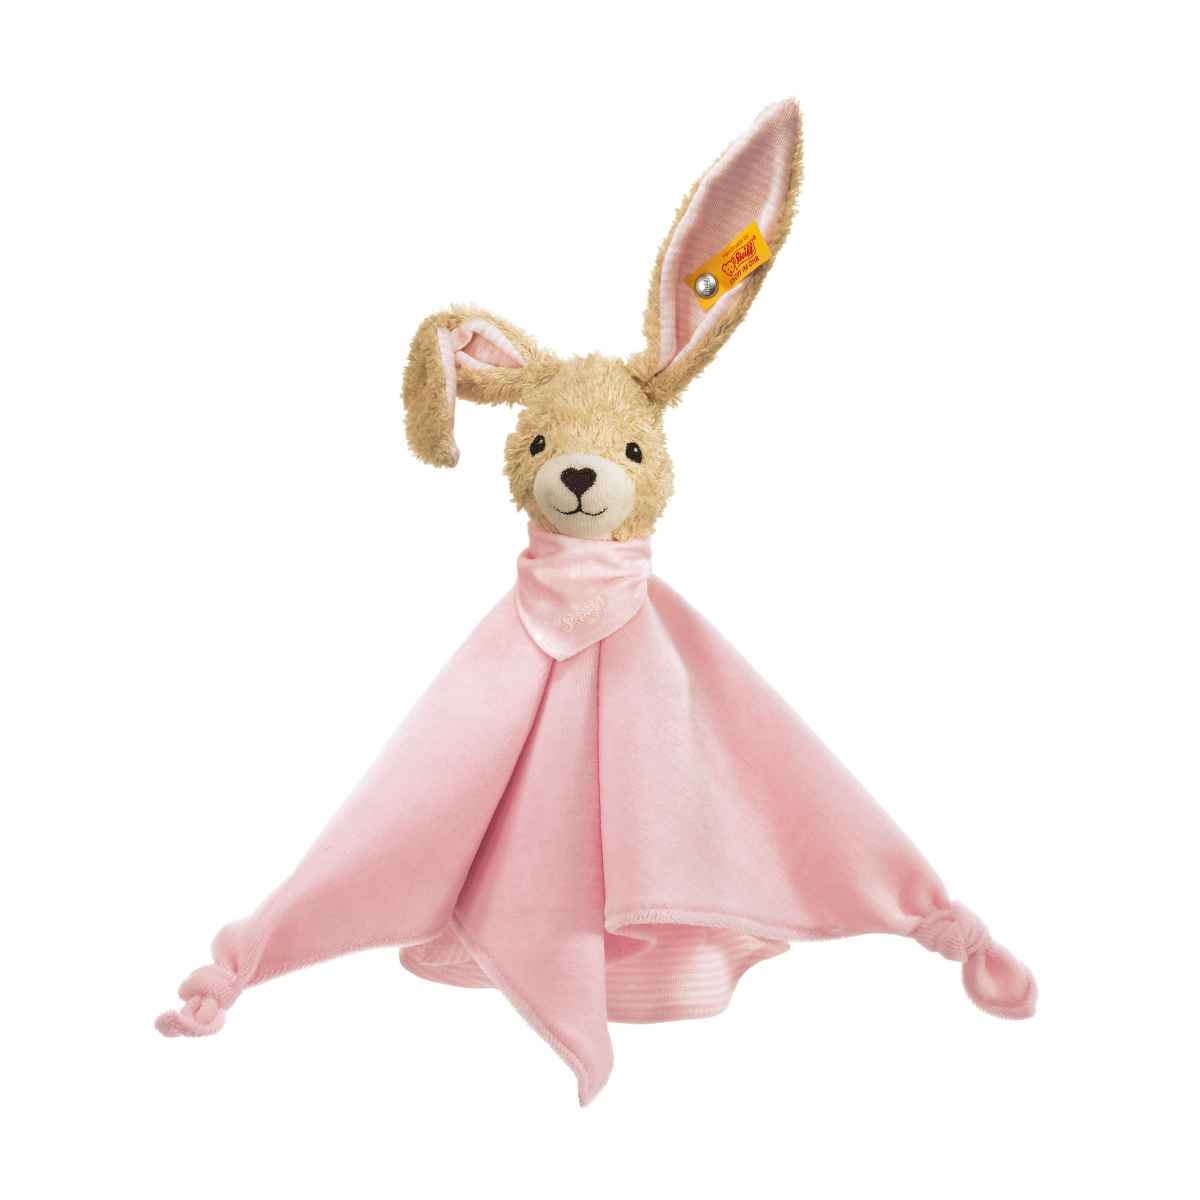 Комфортер для новорожденных Steiff Hoppel Rabbit pink Штайф Кролик Хоппель, розовый, 28 см комфортер kaloo carre douceur игрушка кролик 17 см